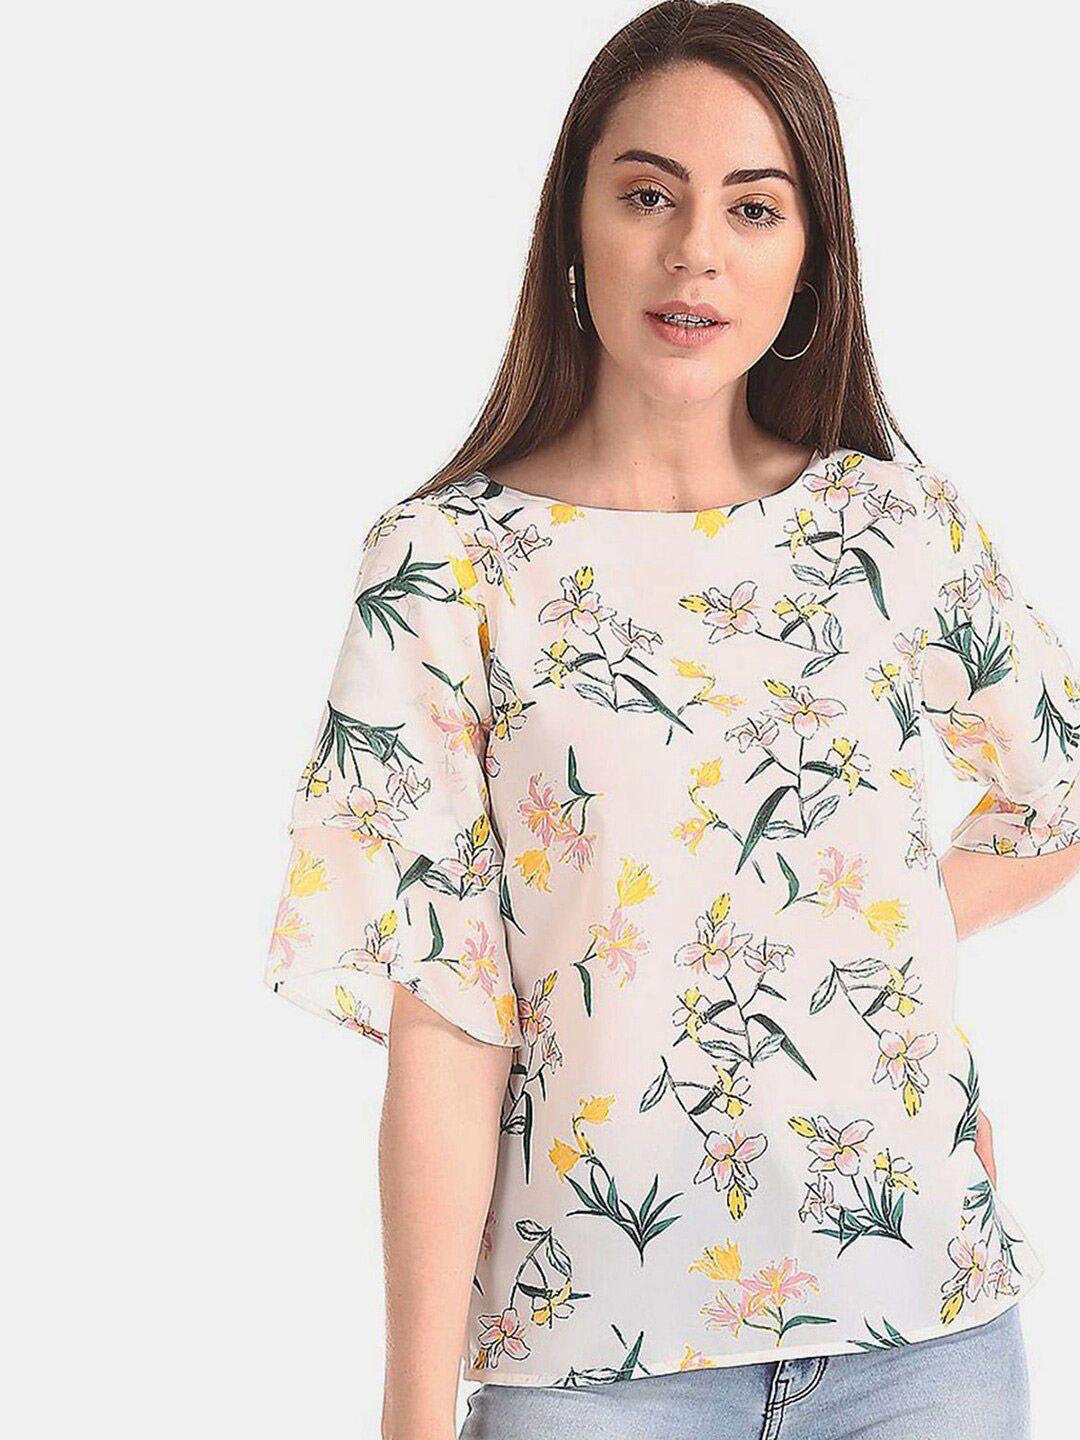 v-mart floral print cotton top